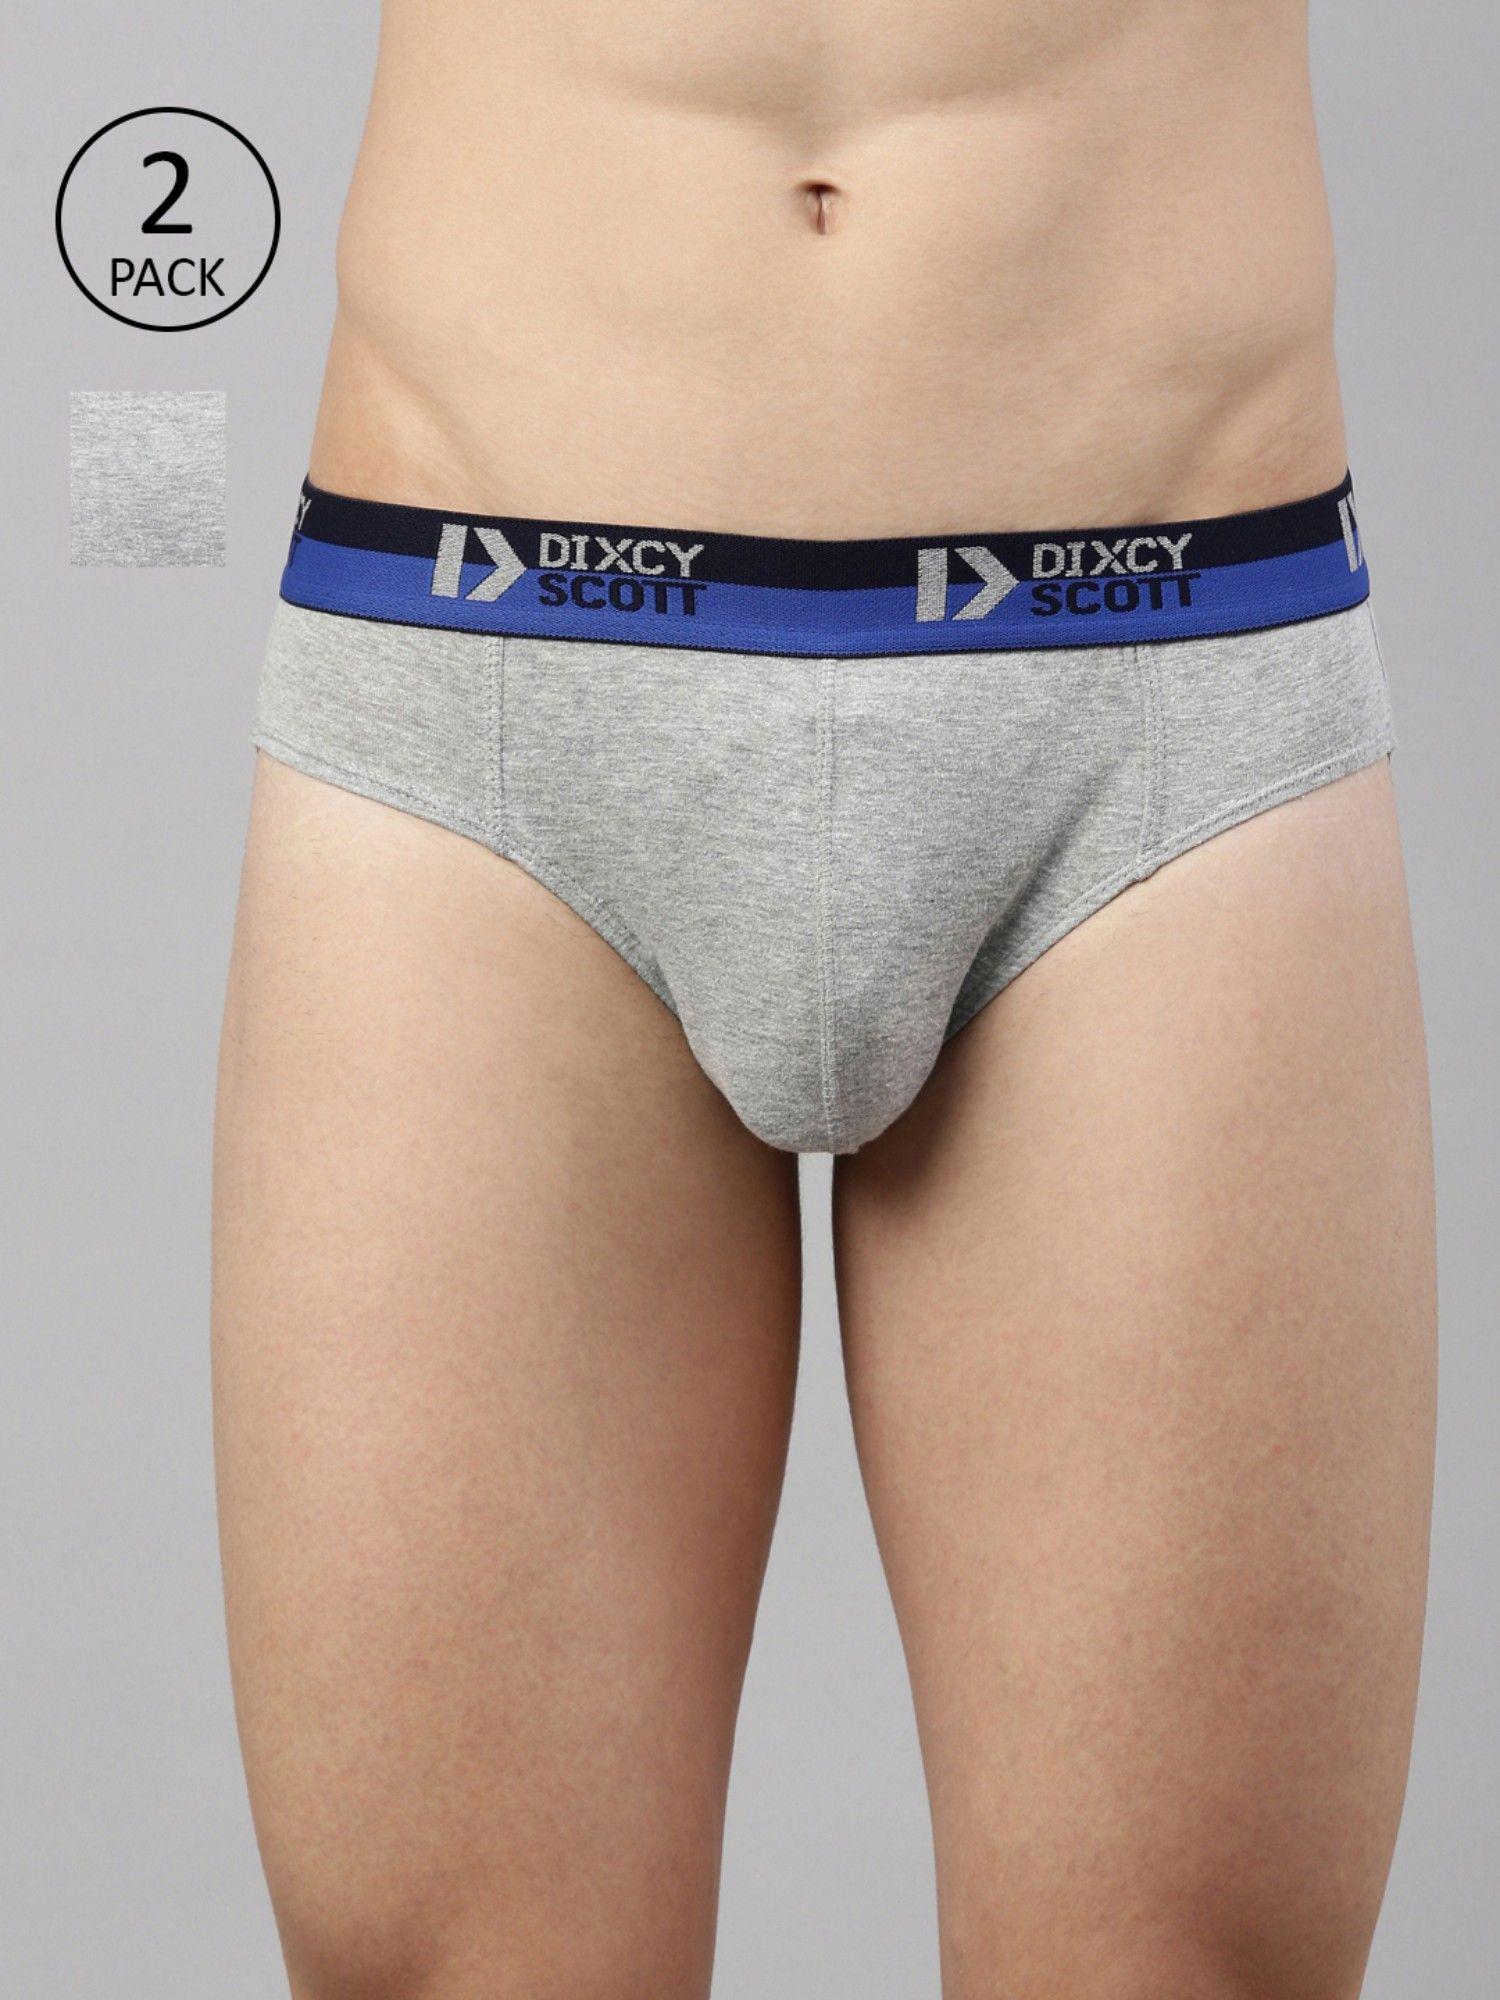 briefs for men cotton underwear grey (pack of 2)